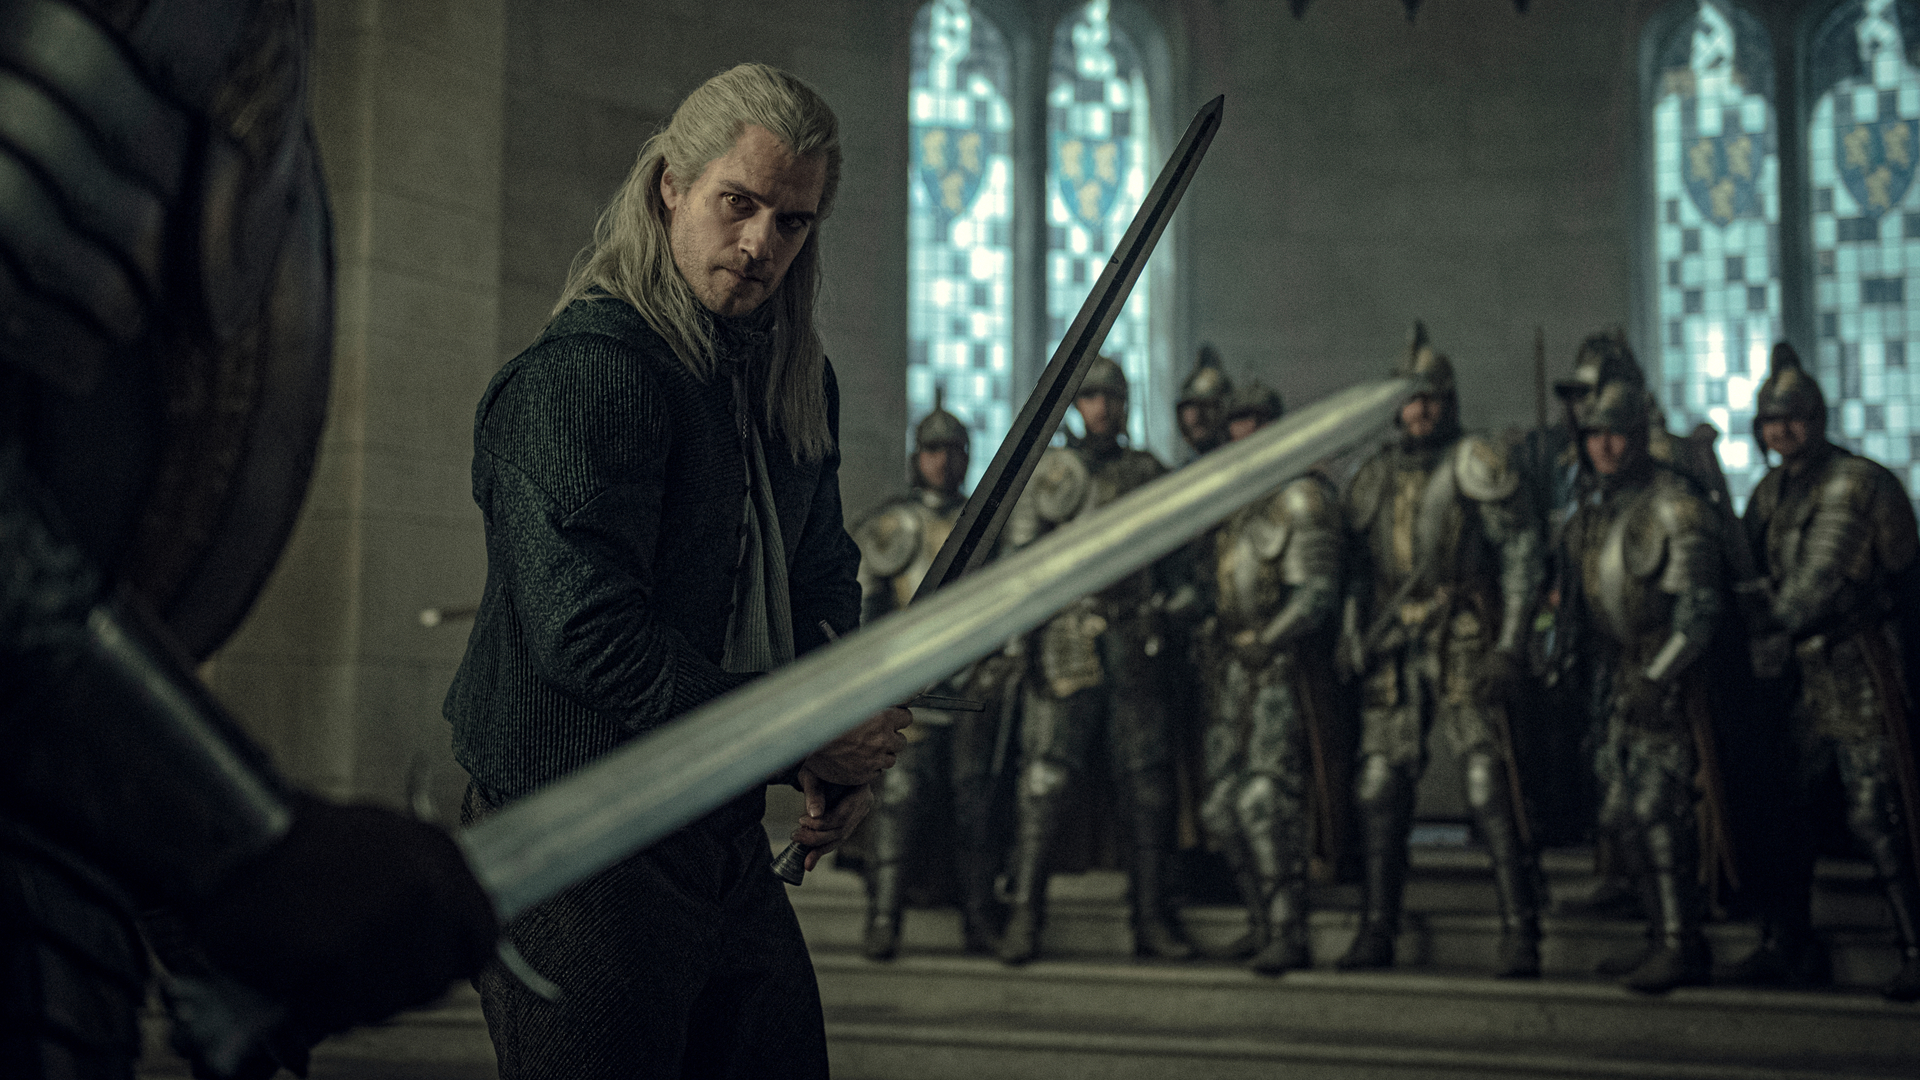 Geralt of Rivia Sword Fight production still